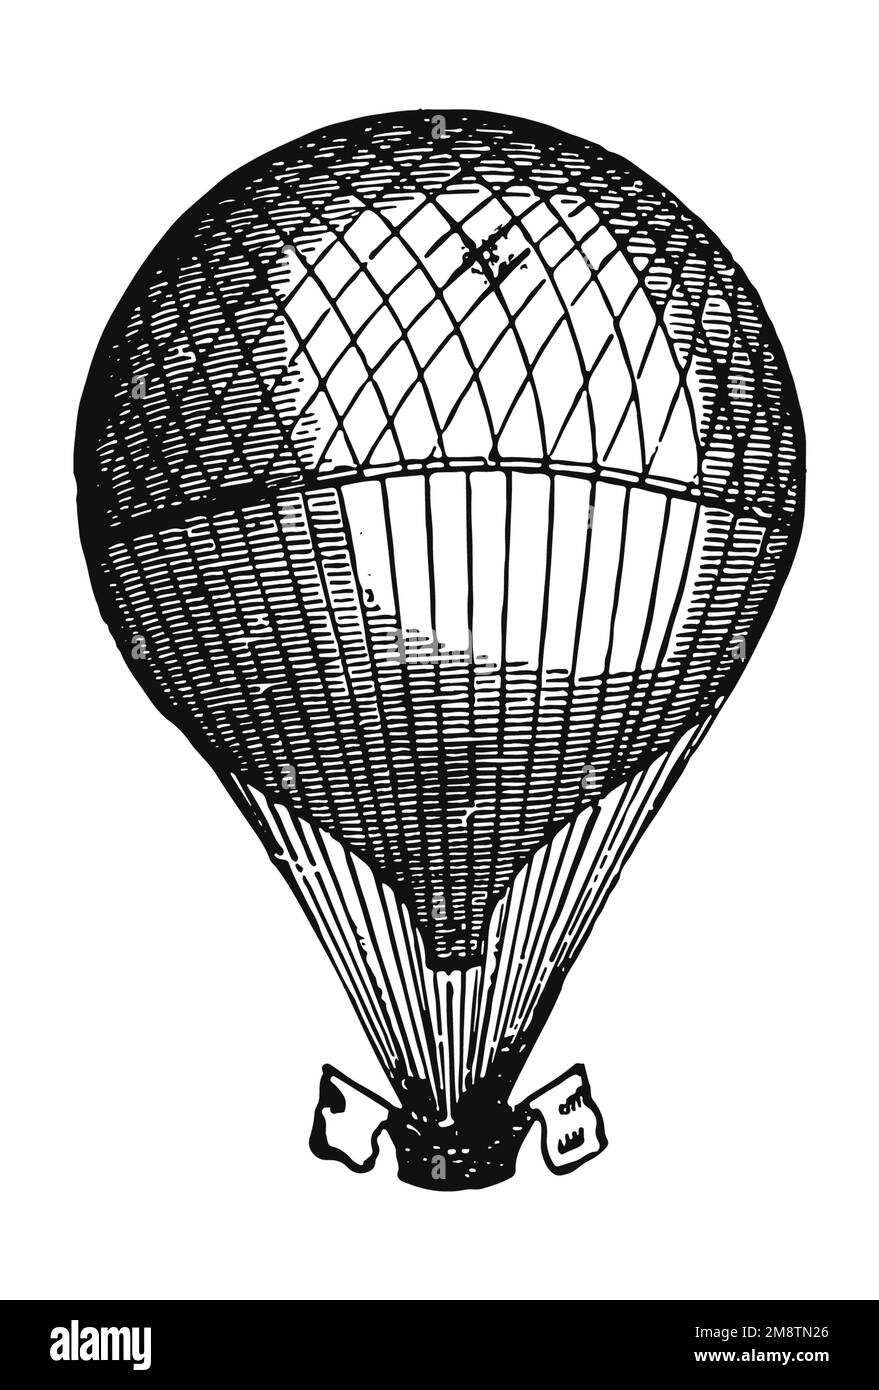 Vintage hot-air balloon illustration Stock Photo